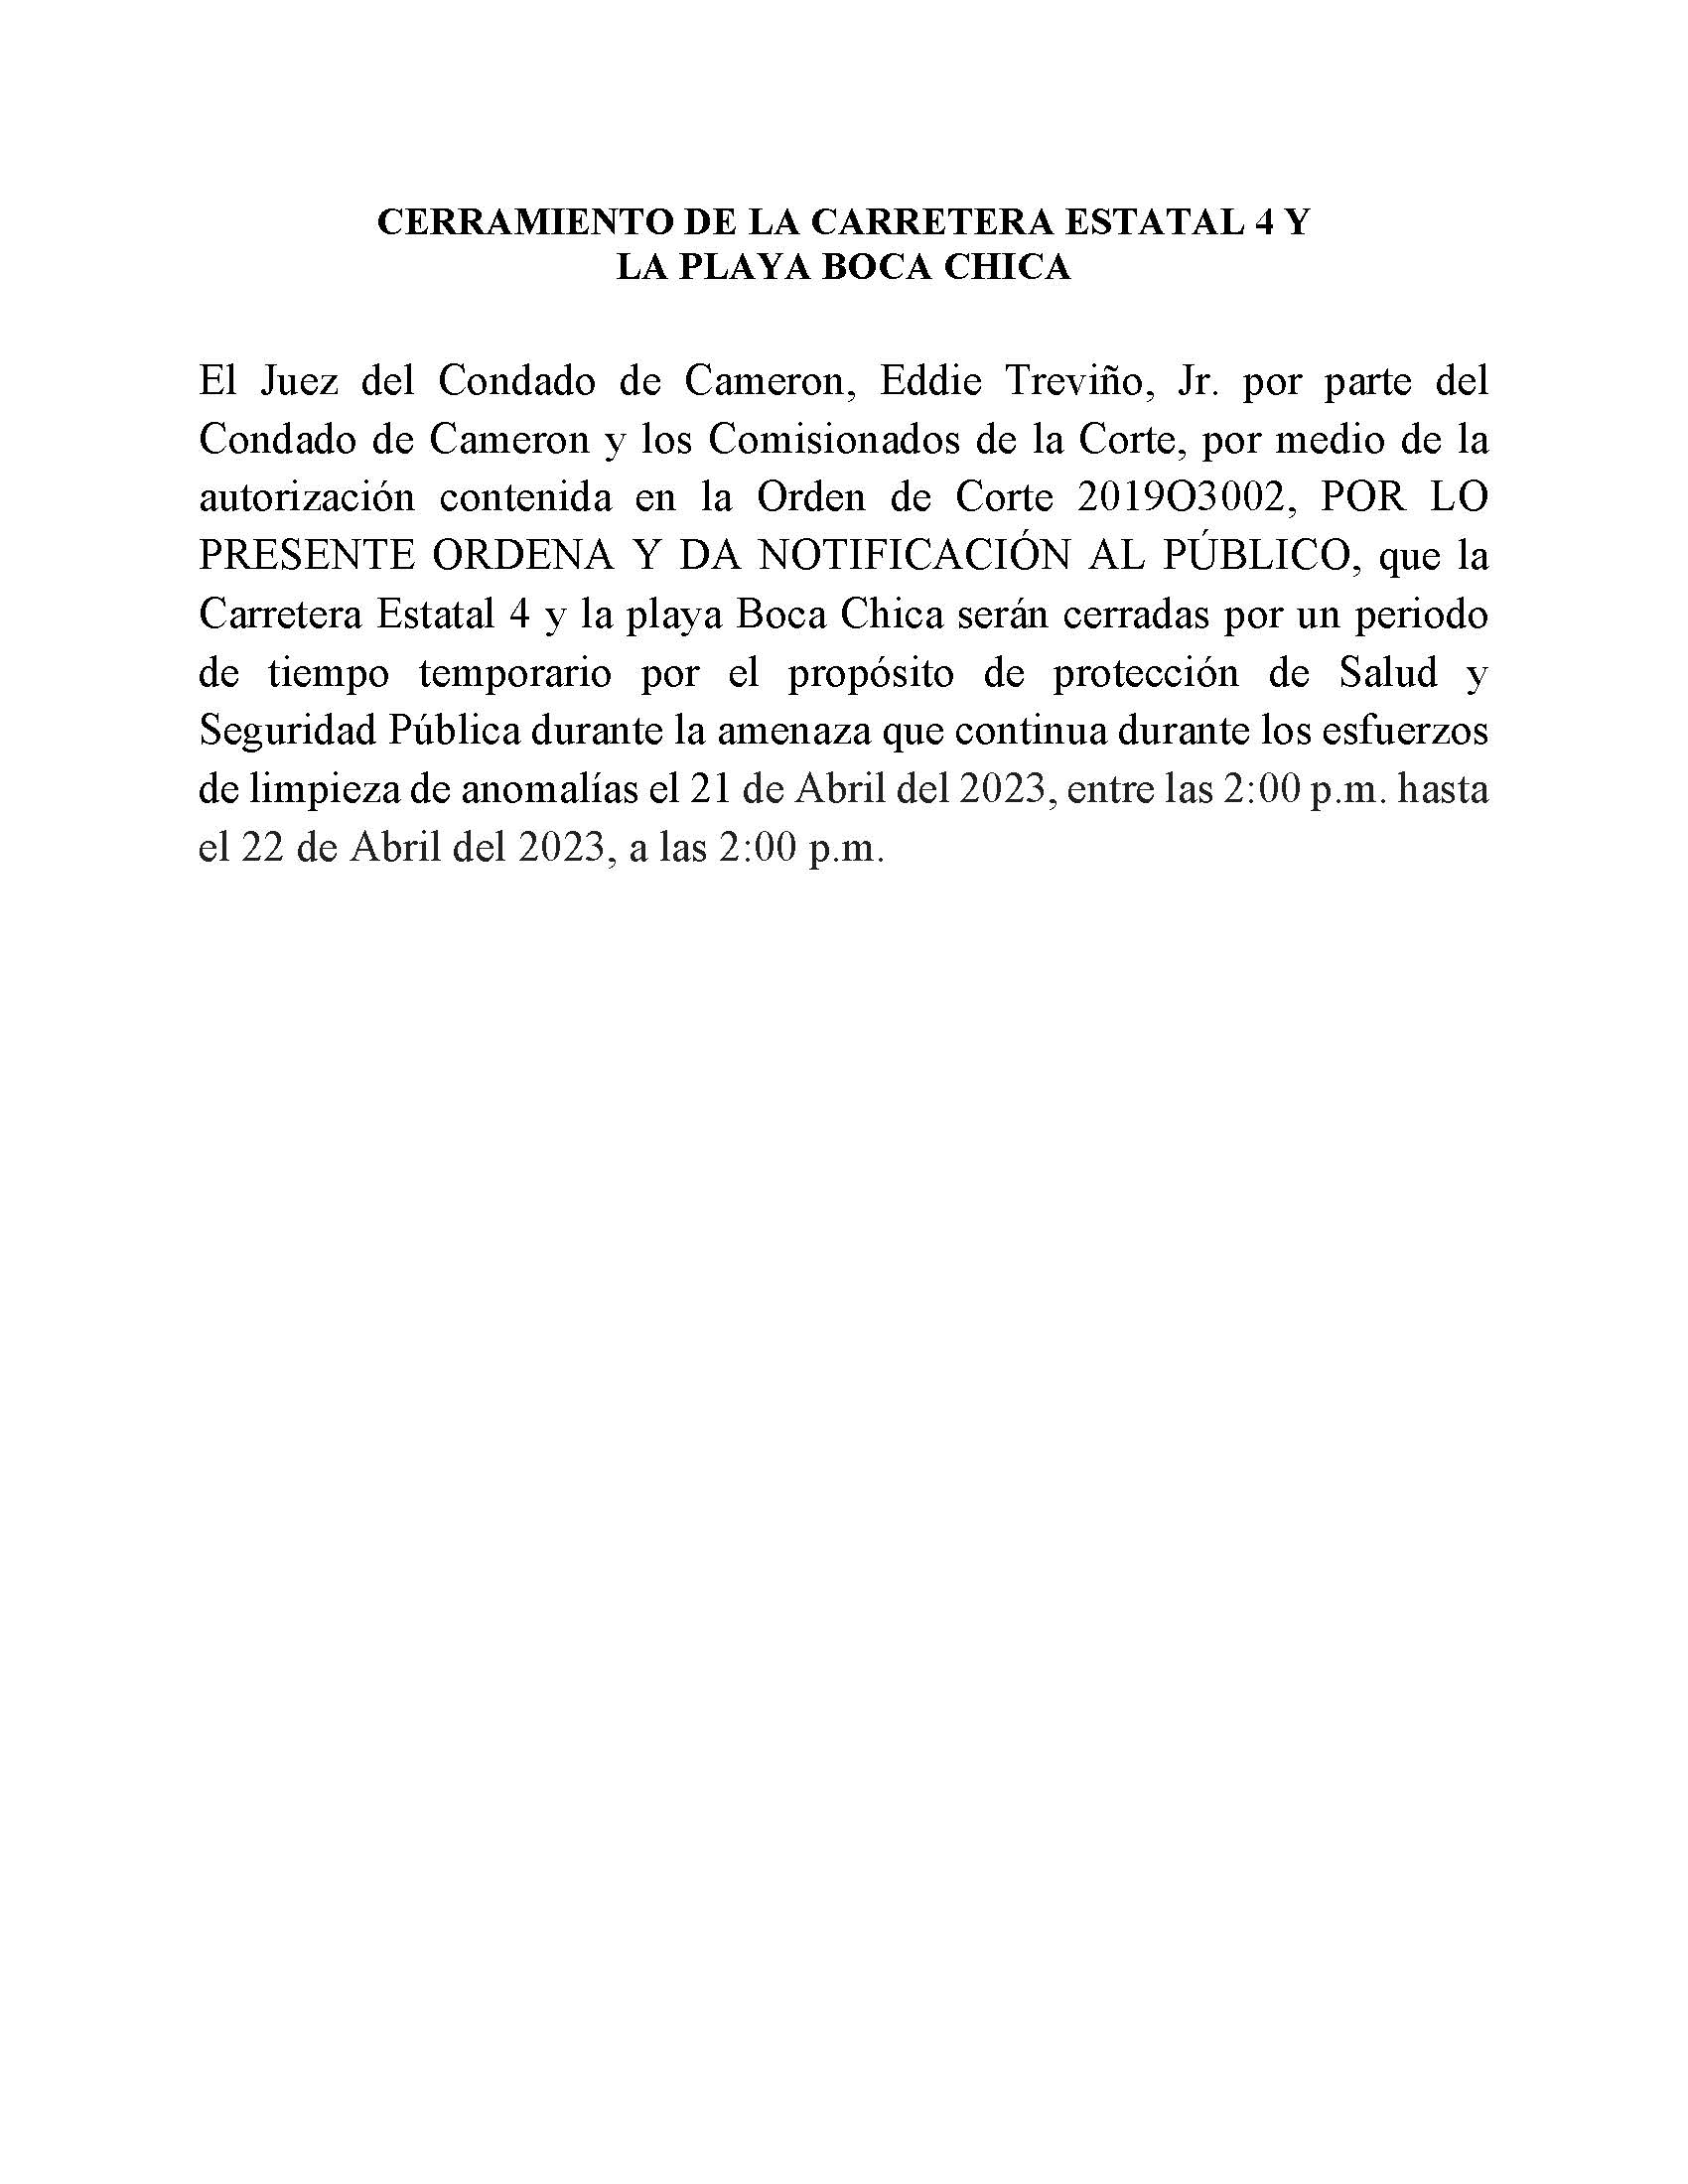 ORDER.CLOSURE OF HIGHWAY 4 Y LA PLAYA BOCA CHICA.SPANISH.esfuerzos De Limpieza De Anomalias.04.21.23